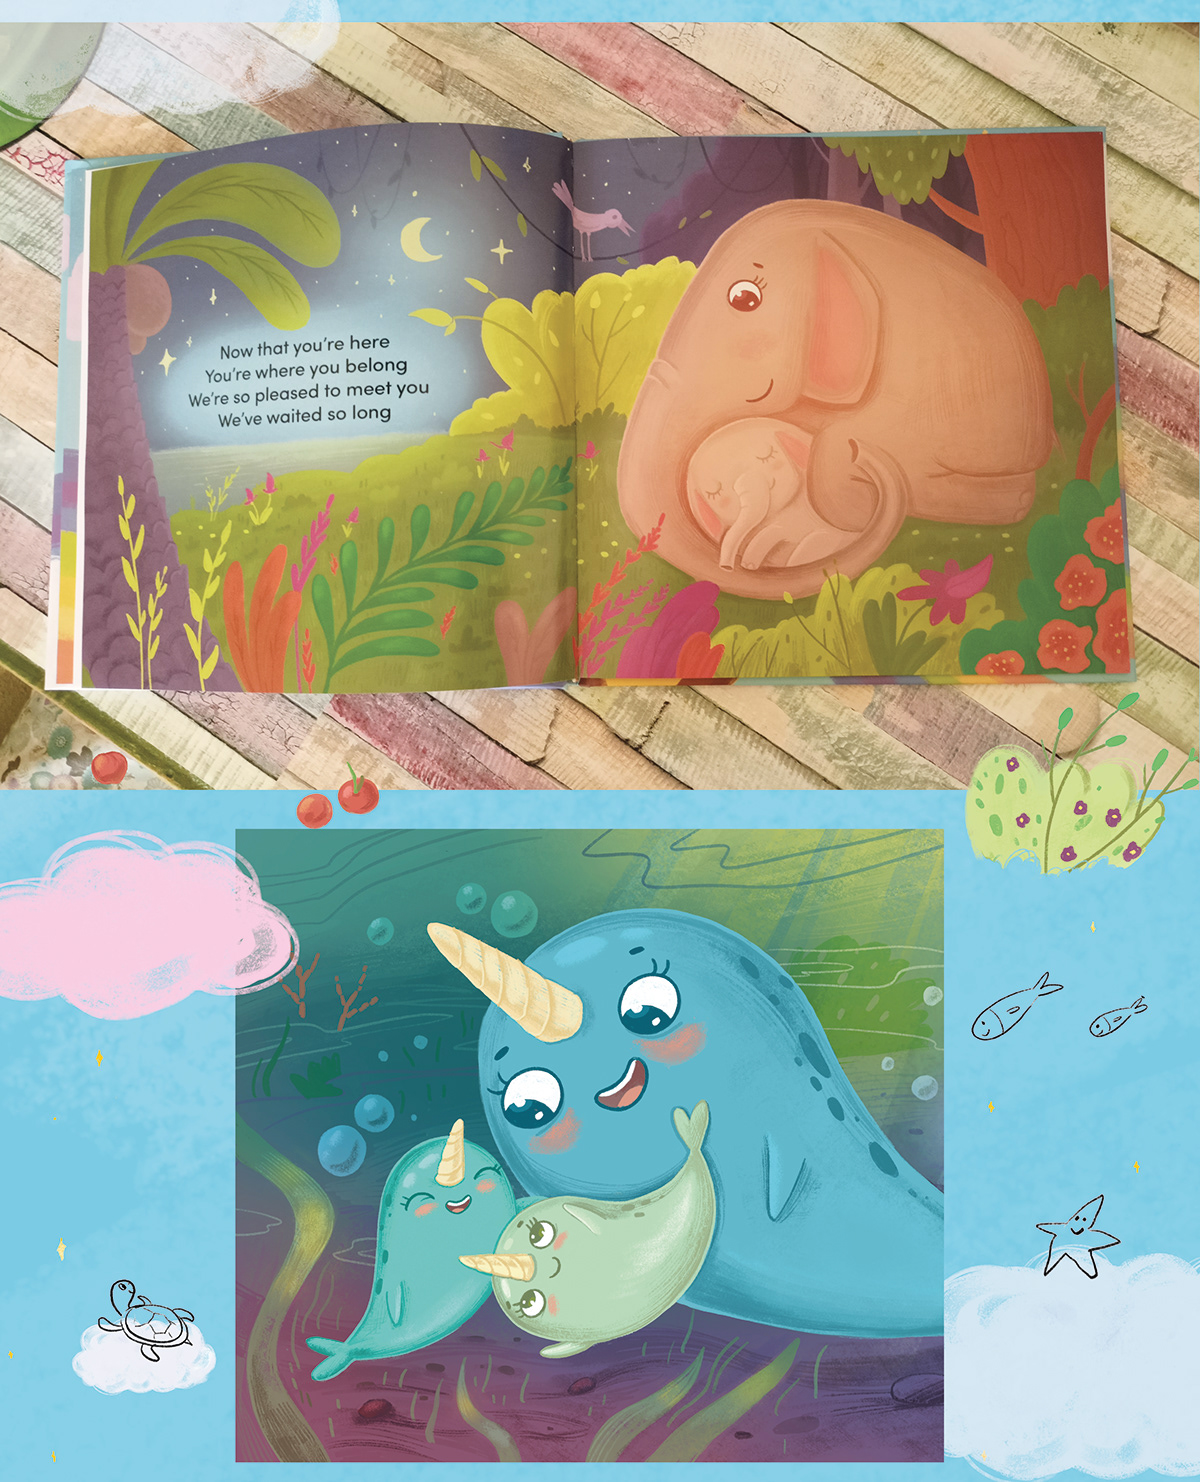 children's book childrenbook ChildrenIllustration Childrensillustration illustrationsforkids kidlitart kidsbooksillustrator picturebook